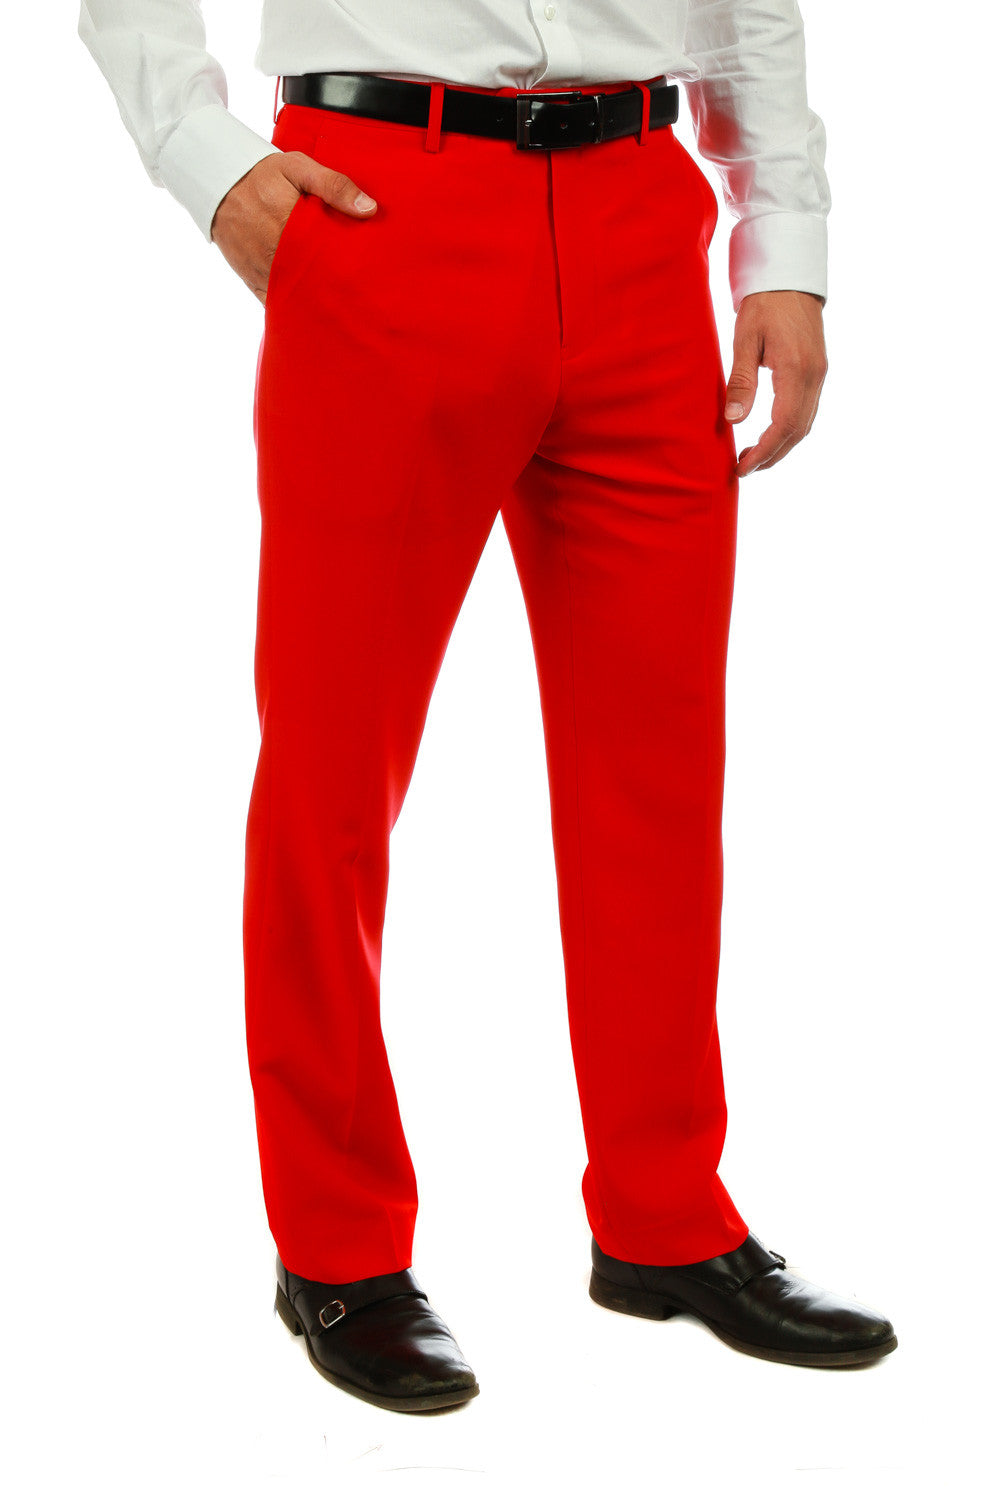 Navy & Red Slim Fit Plaid Pants | D&K SUIT DISCOUNTERS